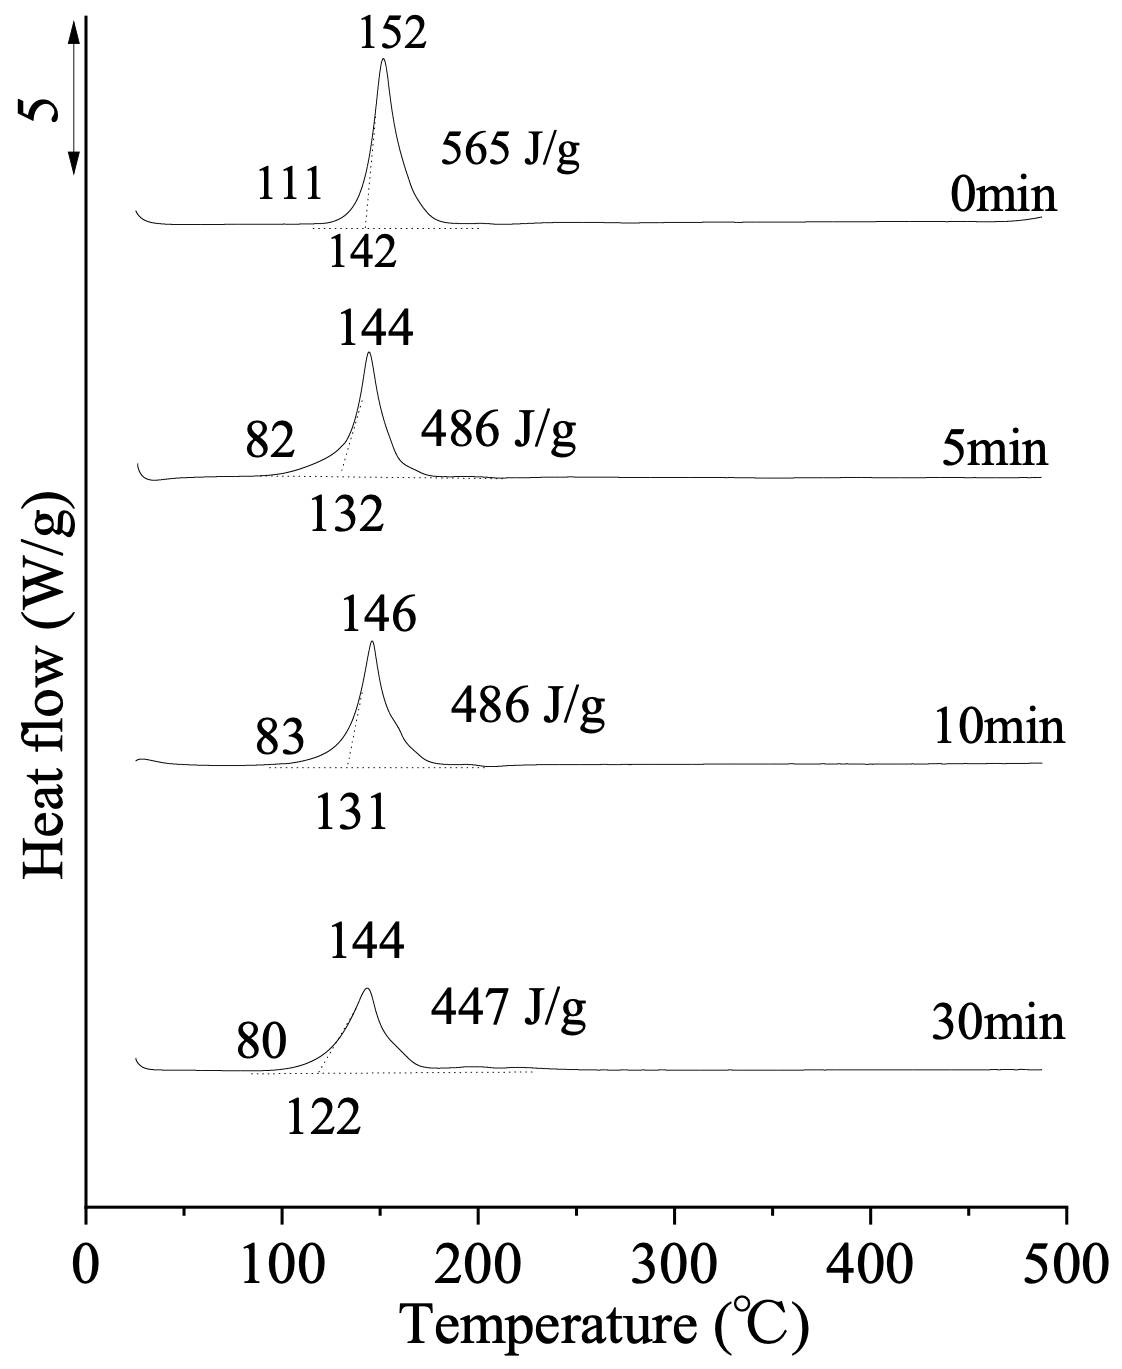 図 銀化合物とアミン類の反応における中間生成物のDSC曲線（各々、反応時間を付記）